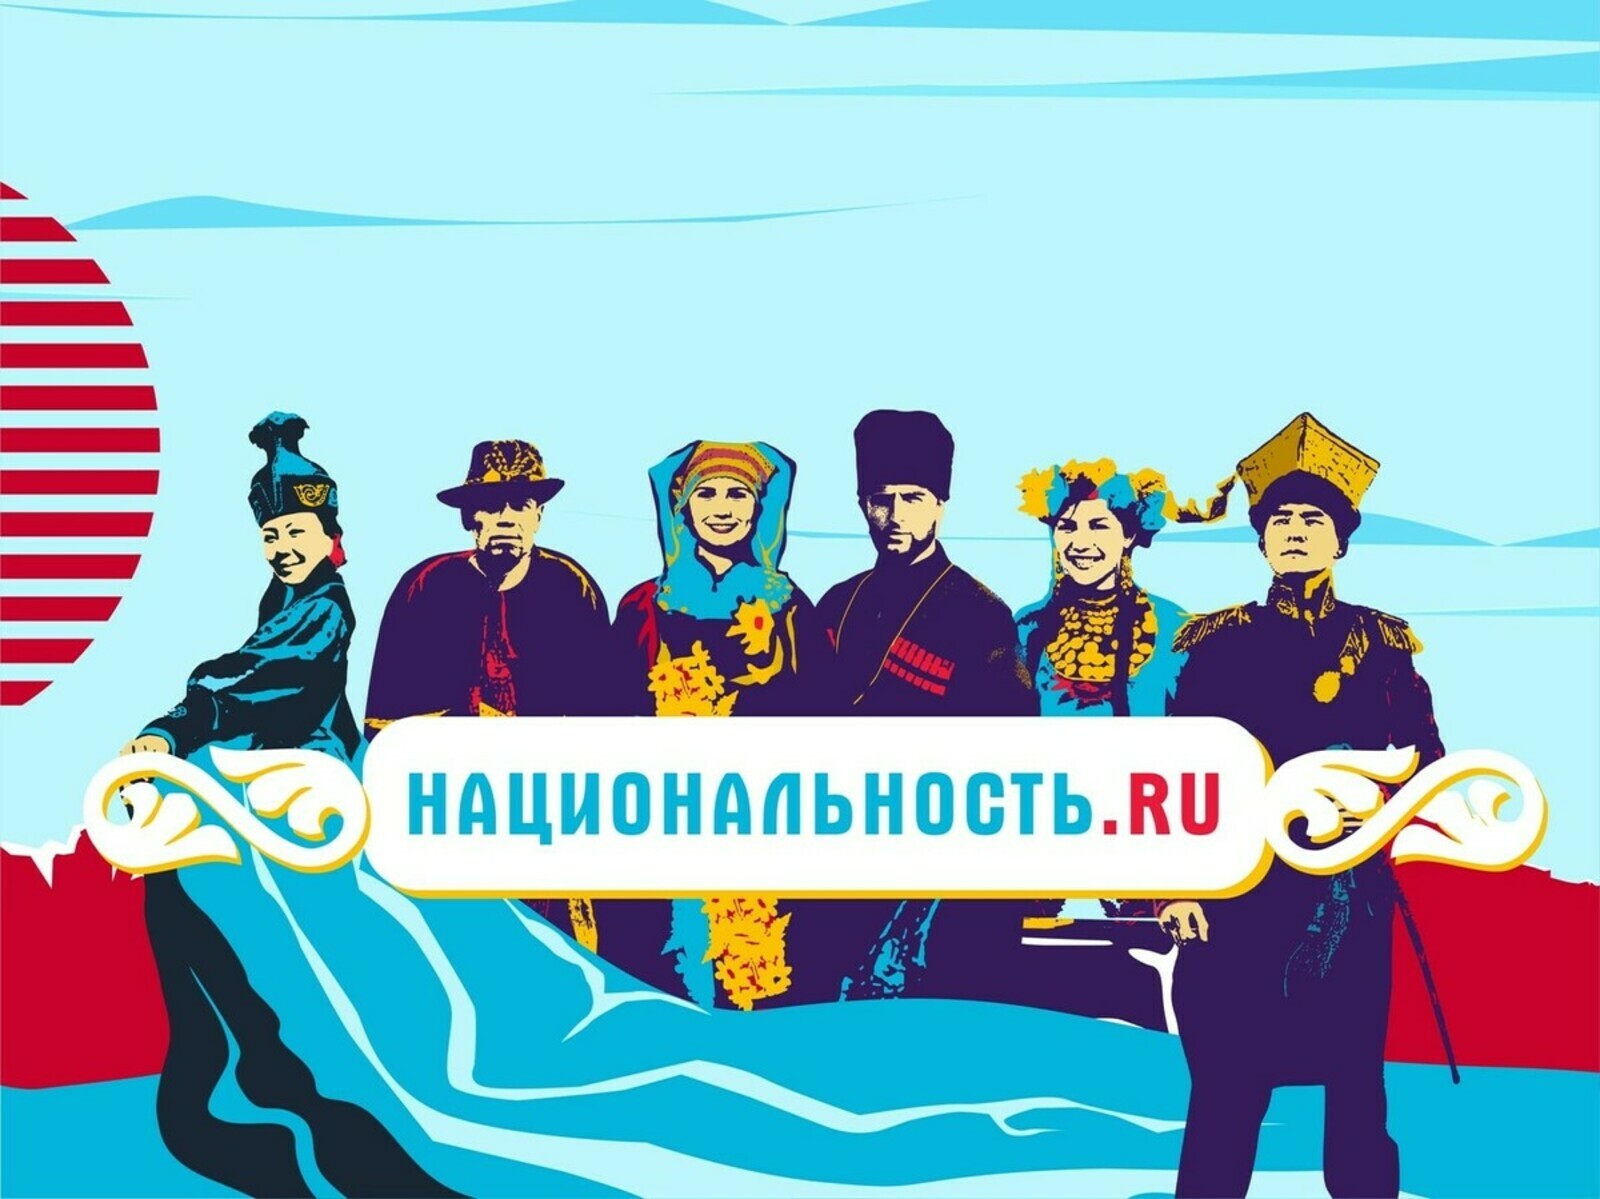 Съёмочная группа тревел-проекта «Национальность.ru» - в Башкортостане